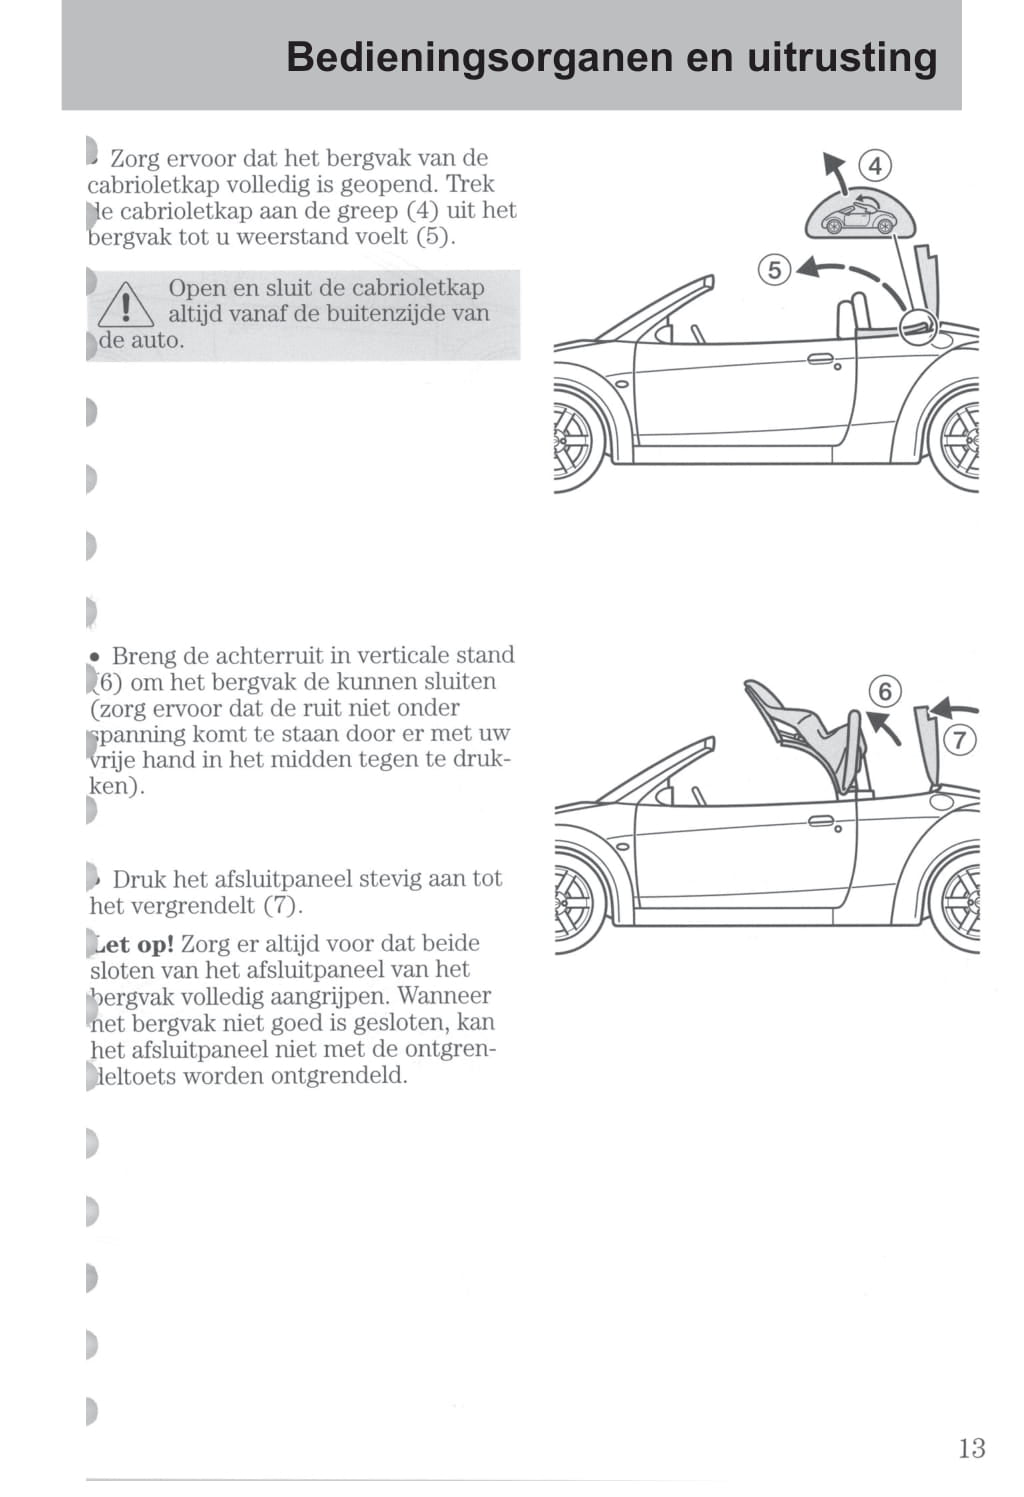 2003-2006 Ford StreetKa Owner's Manual | Dutch